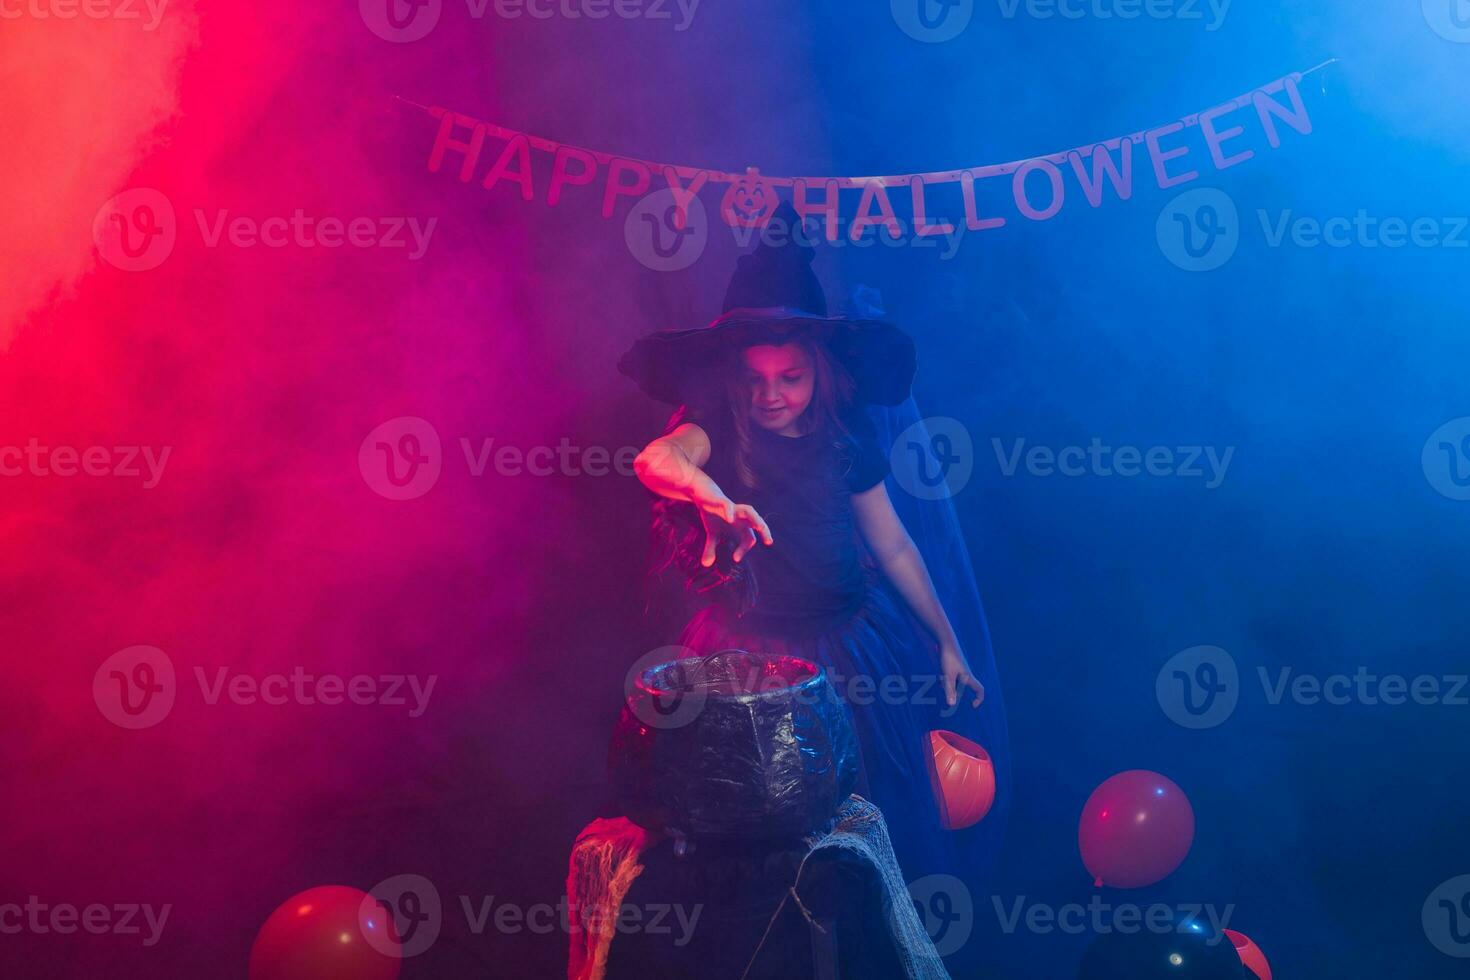 barn flicka häxa framställning en trolldryck i de kittel på halloween högtider. foto